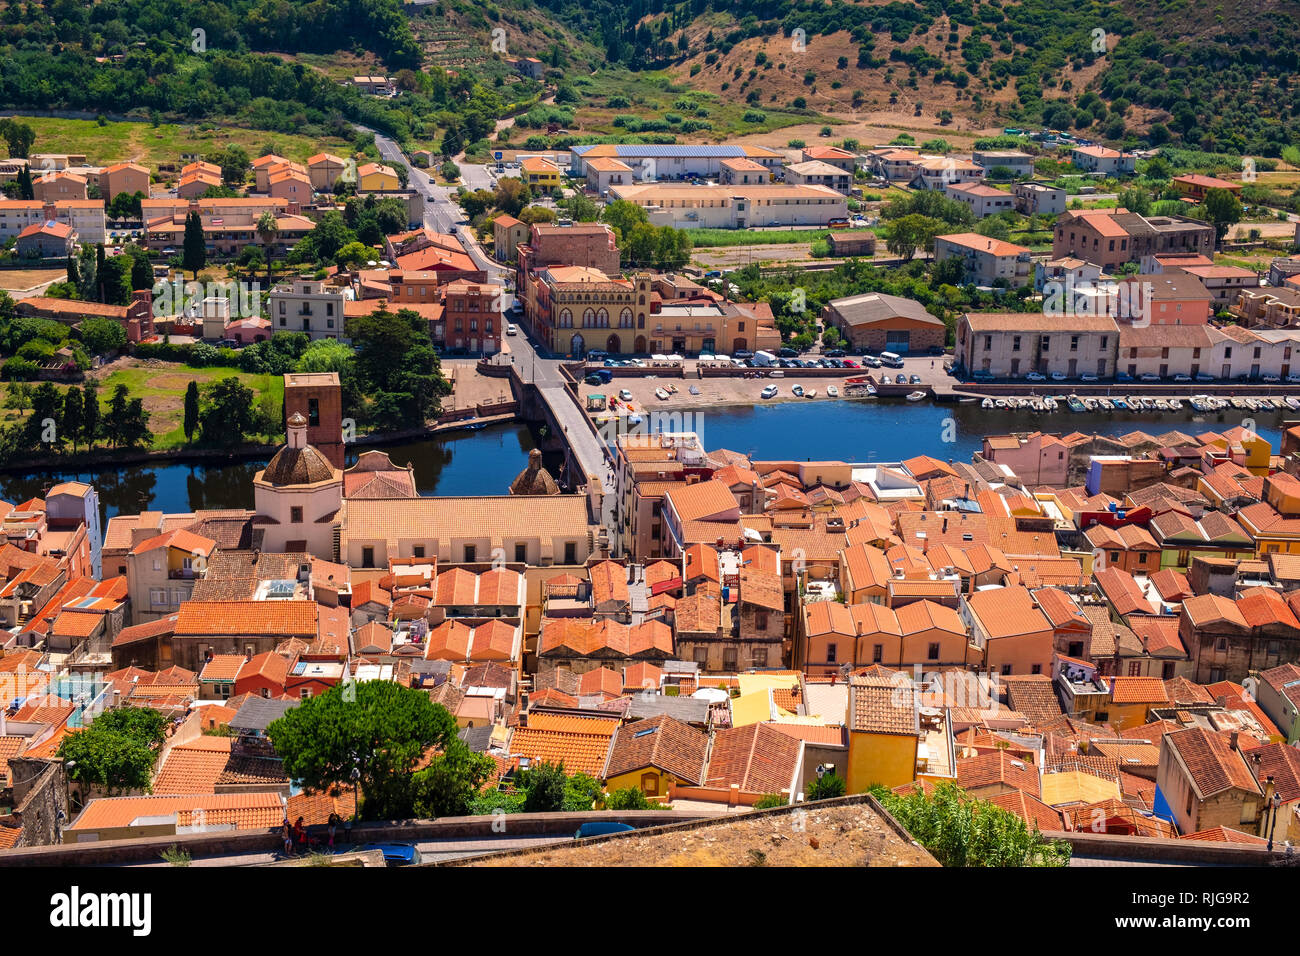 Bosa, Sardinien/Italien - 2018/08/13: Panoramablick auf die Altstadt von Bosa durch den Fluss Temo und die umliegenden Hügel von Malaspina Castle Hill gesehen Stockfoto